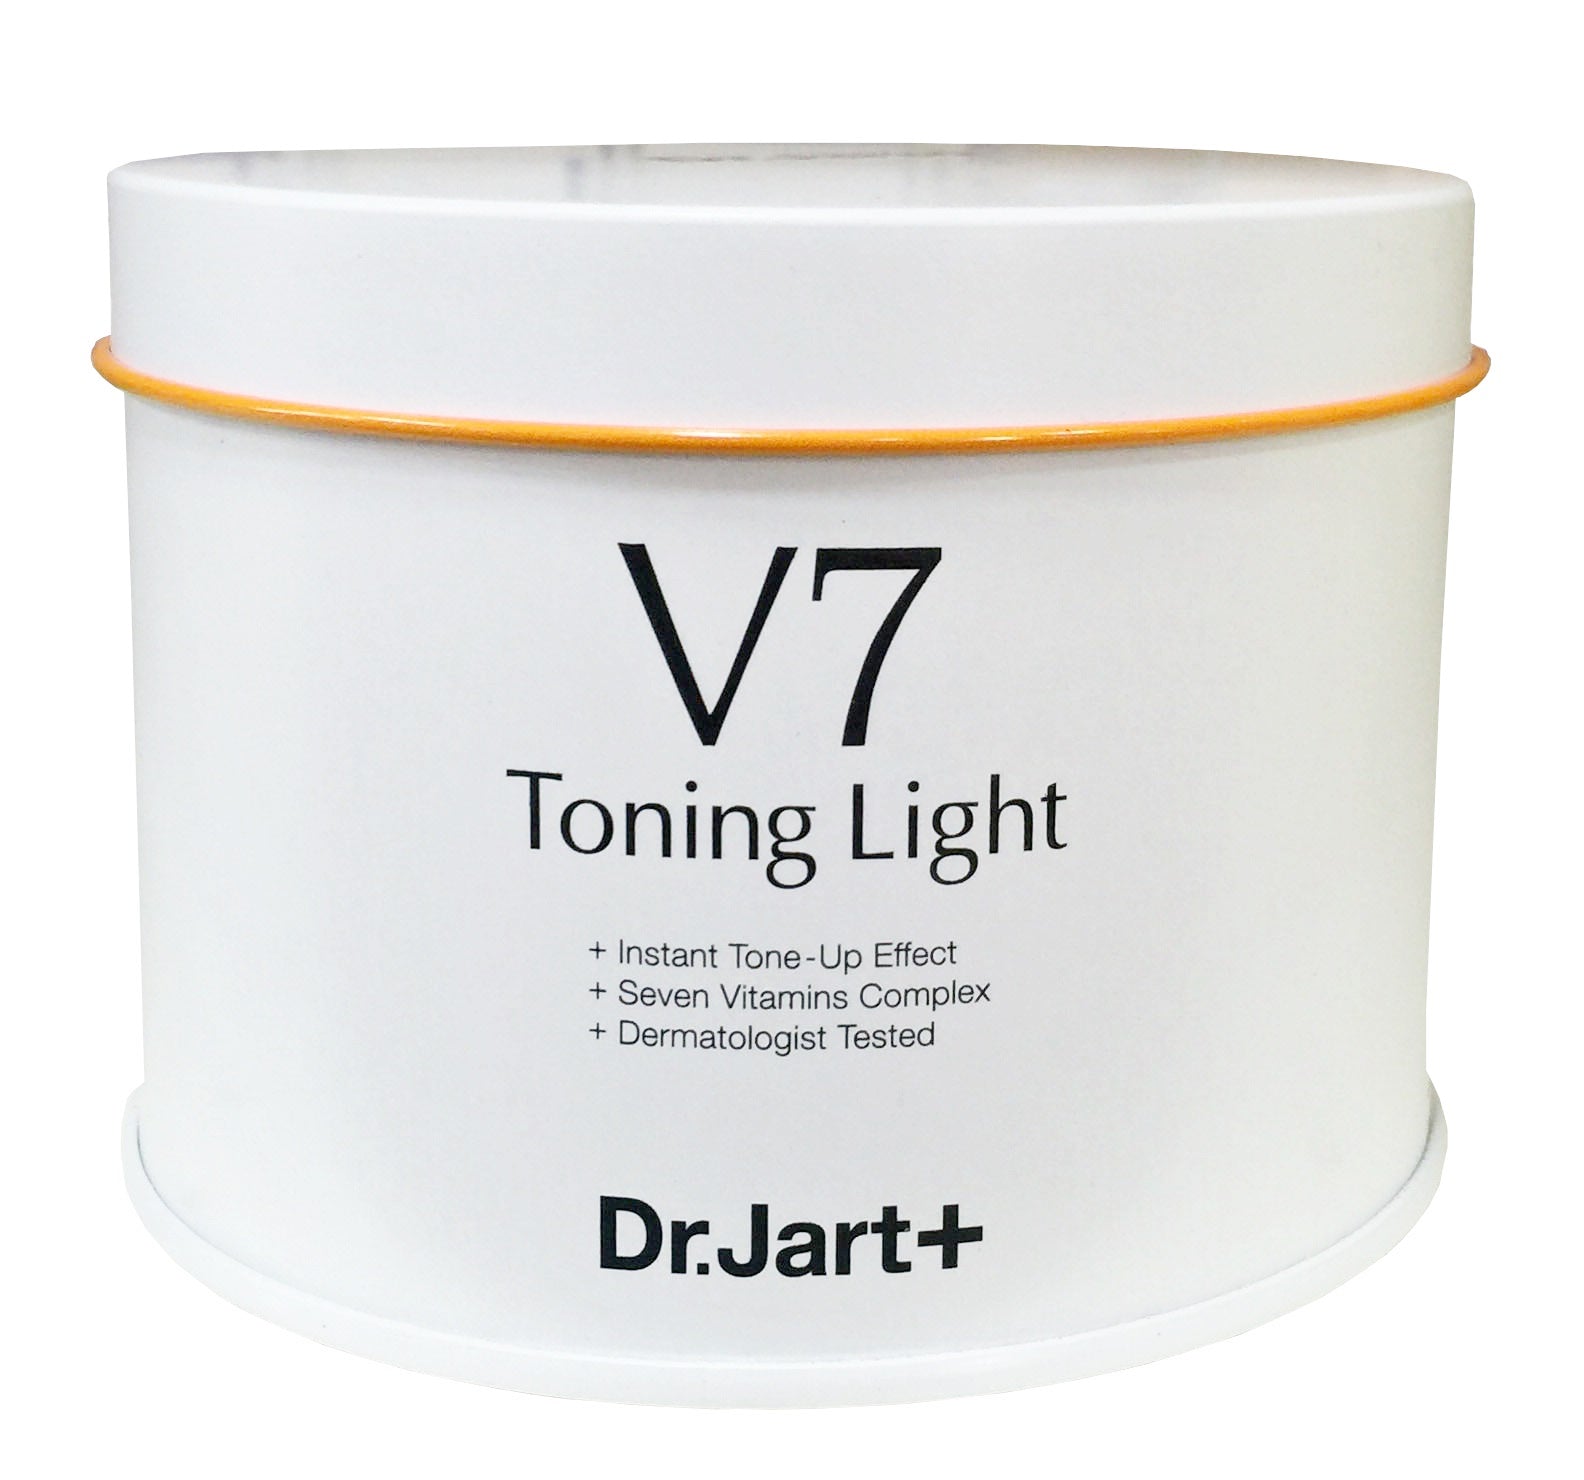 Dr.jart+ V7 Toning Light